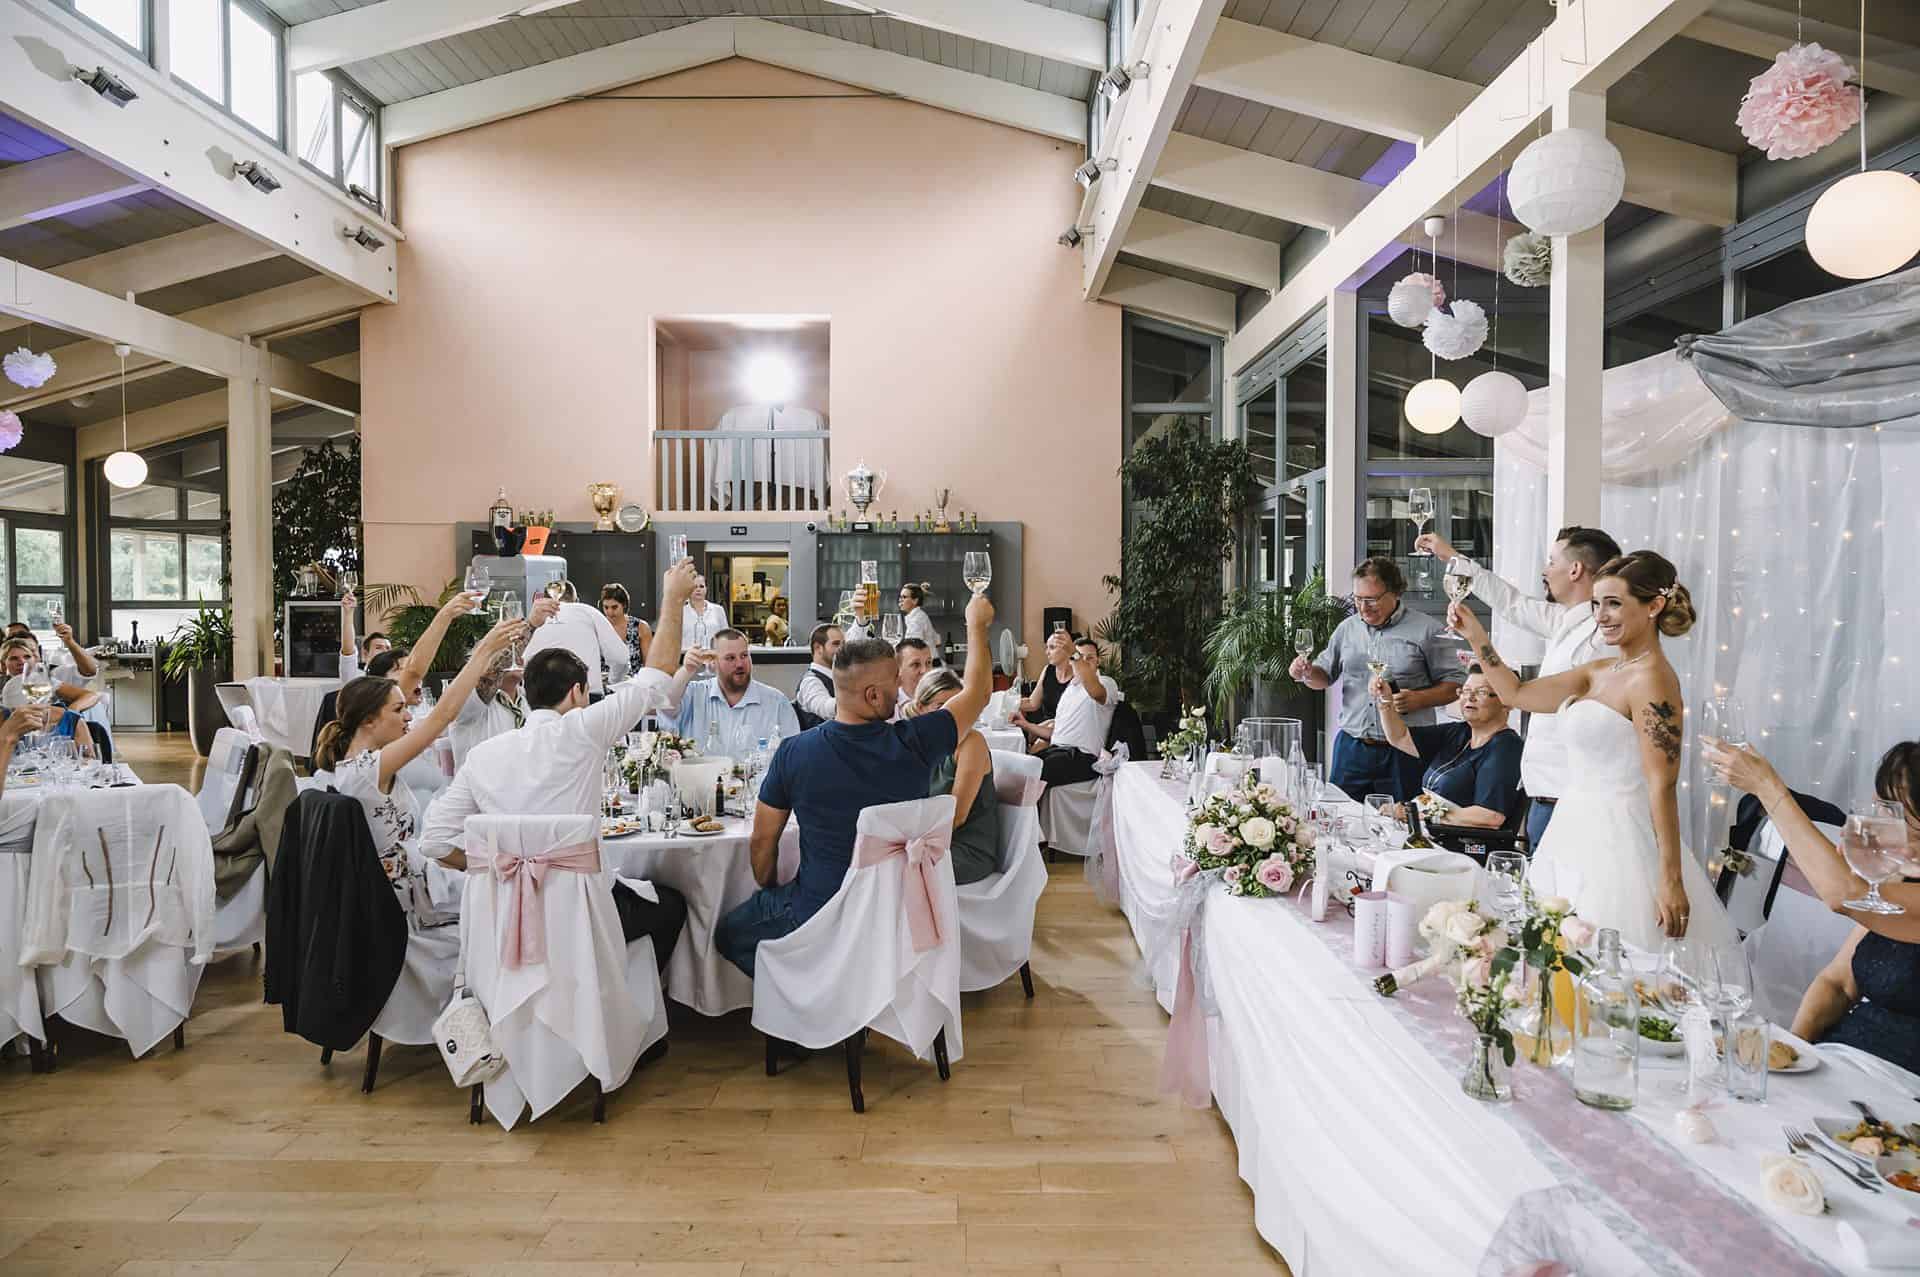 Eine Hochzeitsfeier, bei der die Gäste ihre Hände in die Luft heben.